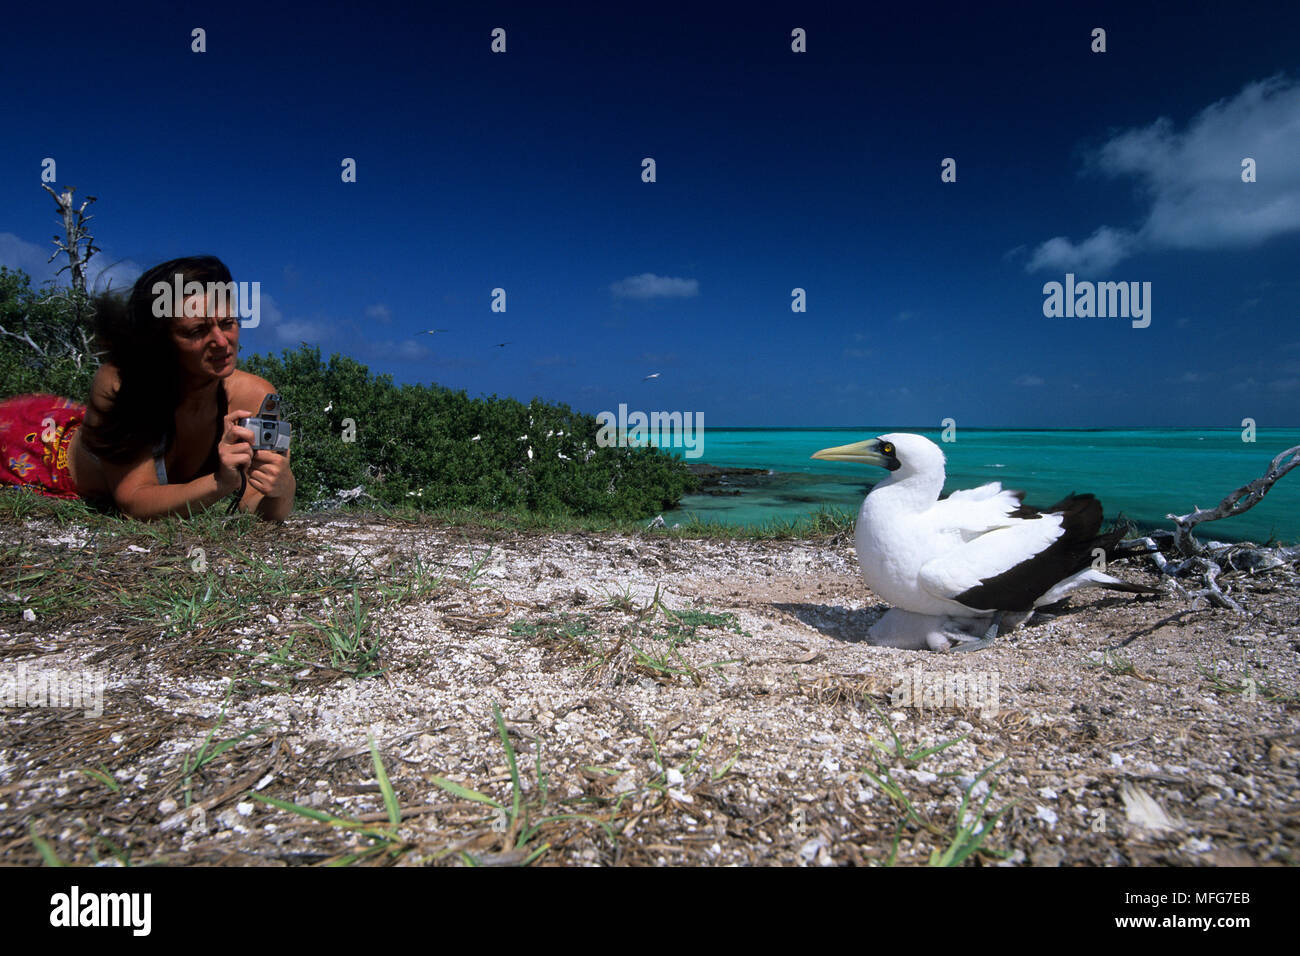 Donna che guarda mascherata booby con pulcino, Sula dactylatra, Aldabra Atoll, patrimonio mondiale naturale, Seychelles, Oceano Indiano Data: 24.06.08 RIF: ZB7 Foto Stock